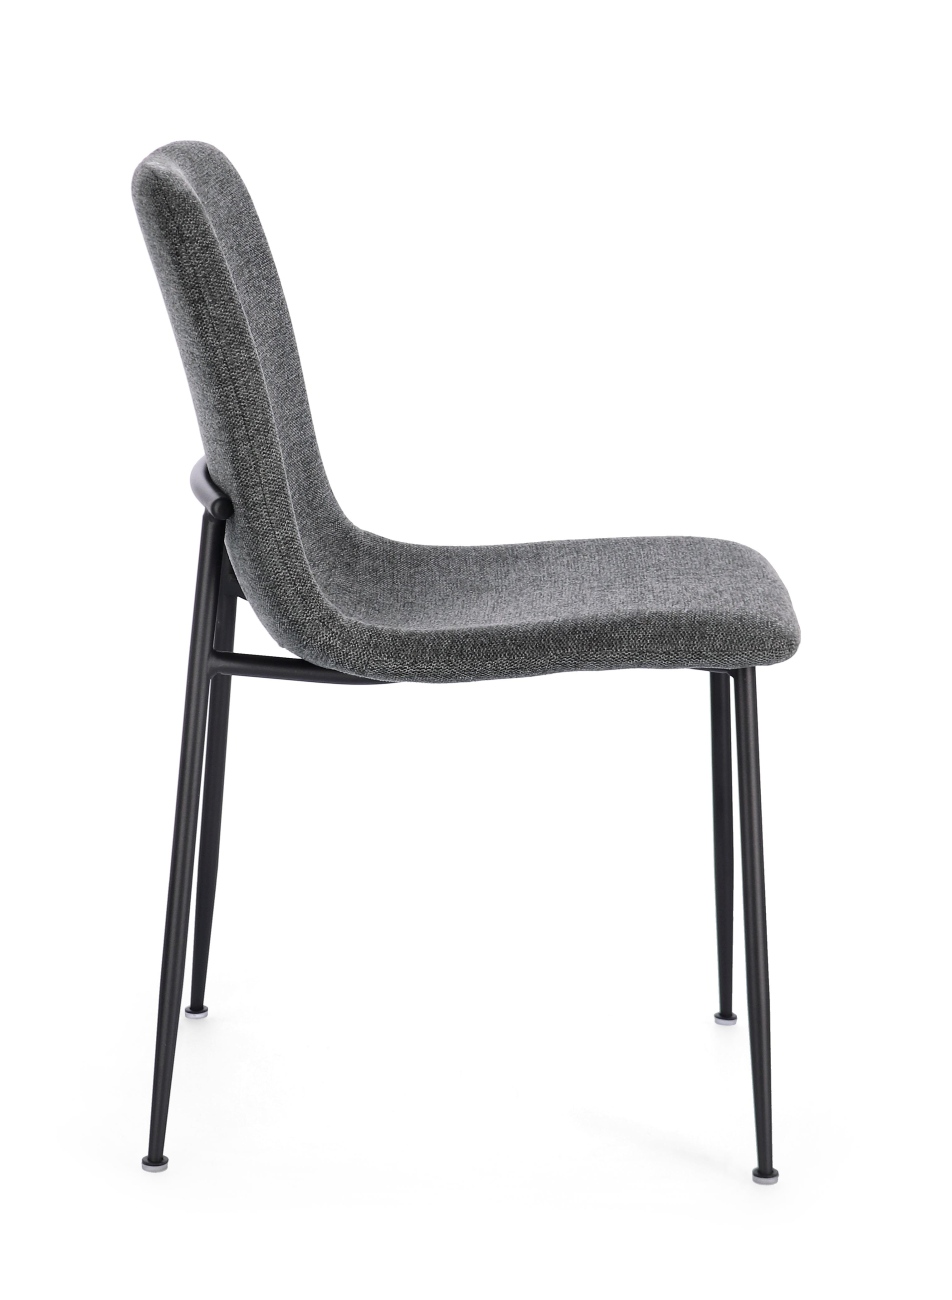 Der Esszimmerstuhl Rinas überzeugt mit seinem modernen Stil. Gefertigt wurde er aus Stoff, welcher einen dunkelgrauen Farbton besitzt. Das Gestell ist aus Metall und hat eine schwarze Farbe. Der Stuhl besitzt eine Sitzhöhe von 46 cm.